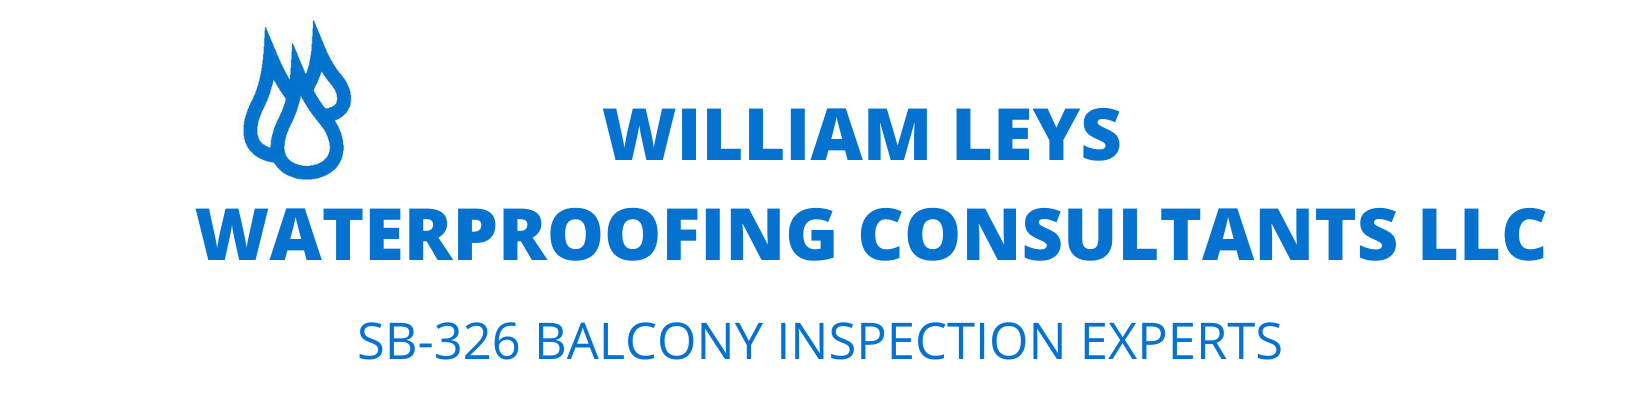 William Leys Waterproofing Consultants LLC